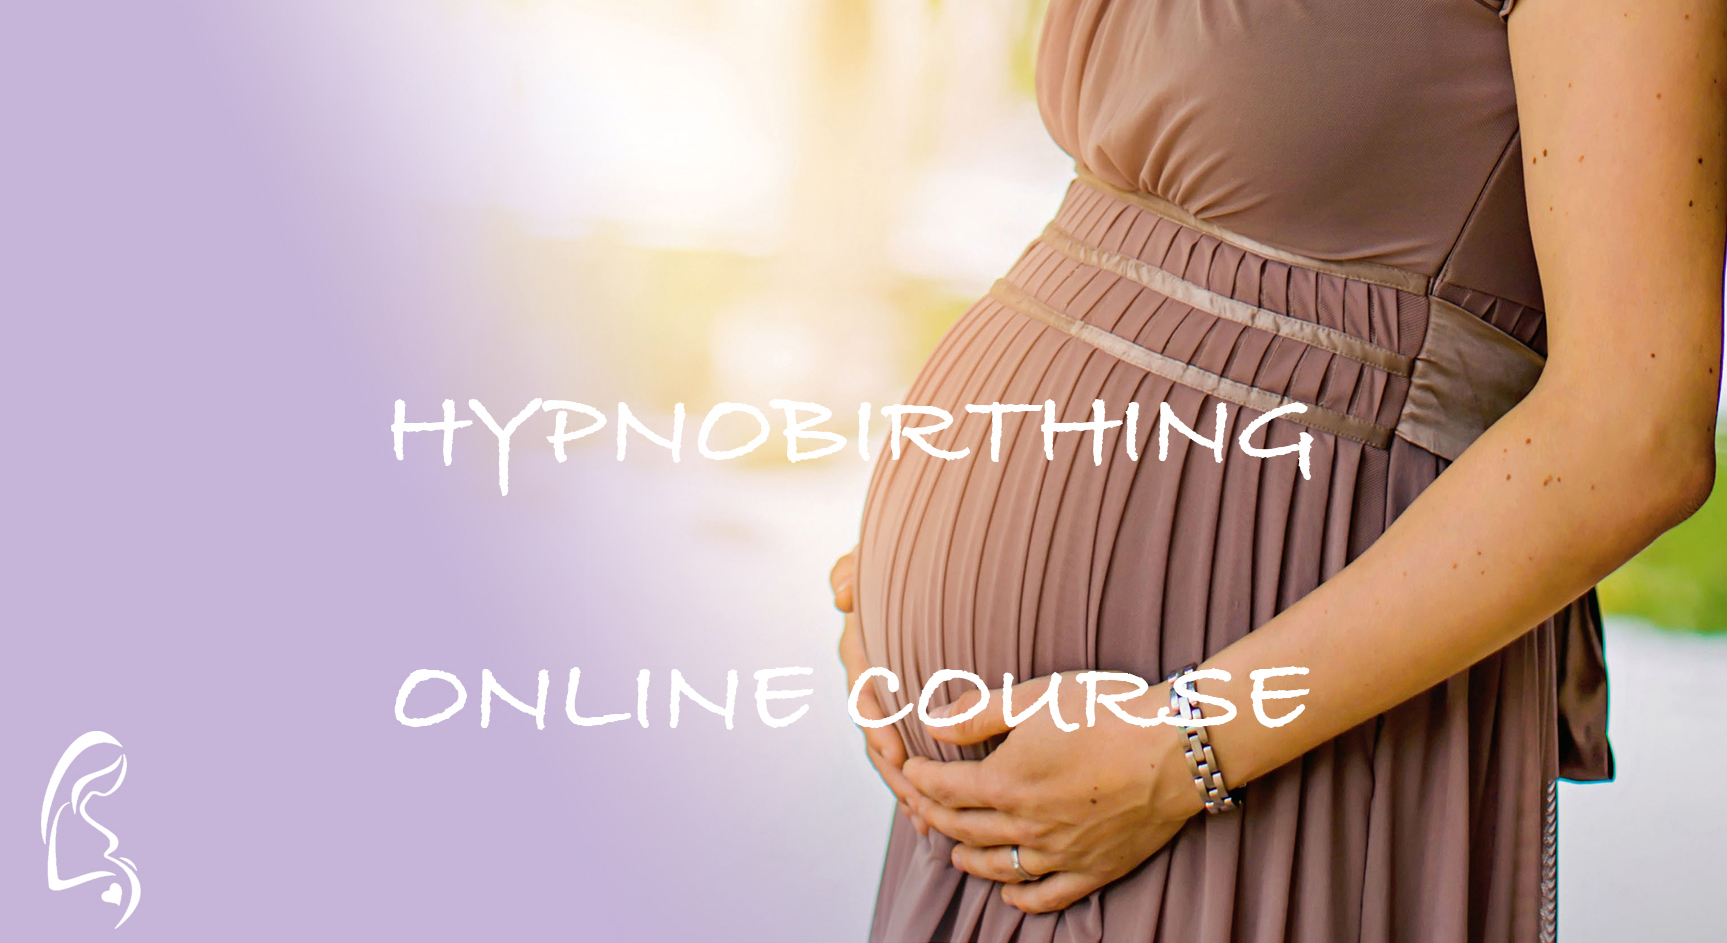 (c) Hypnobirthing-online.de